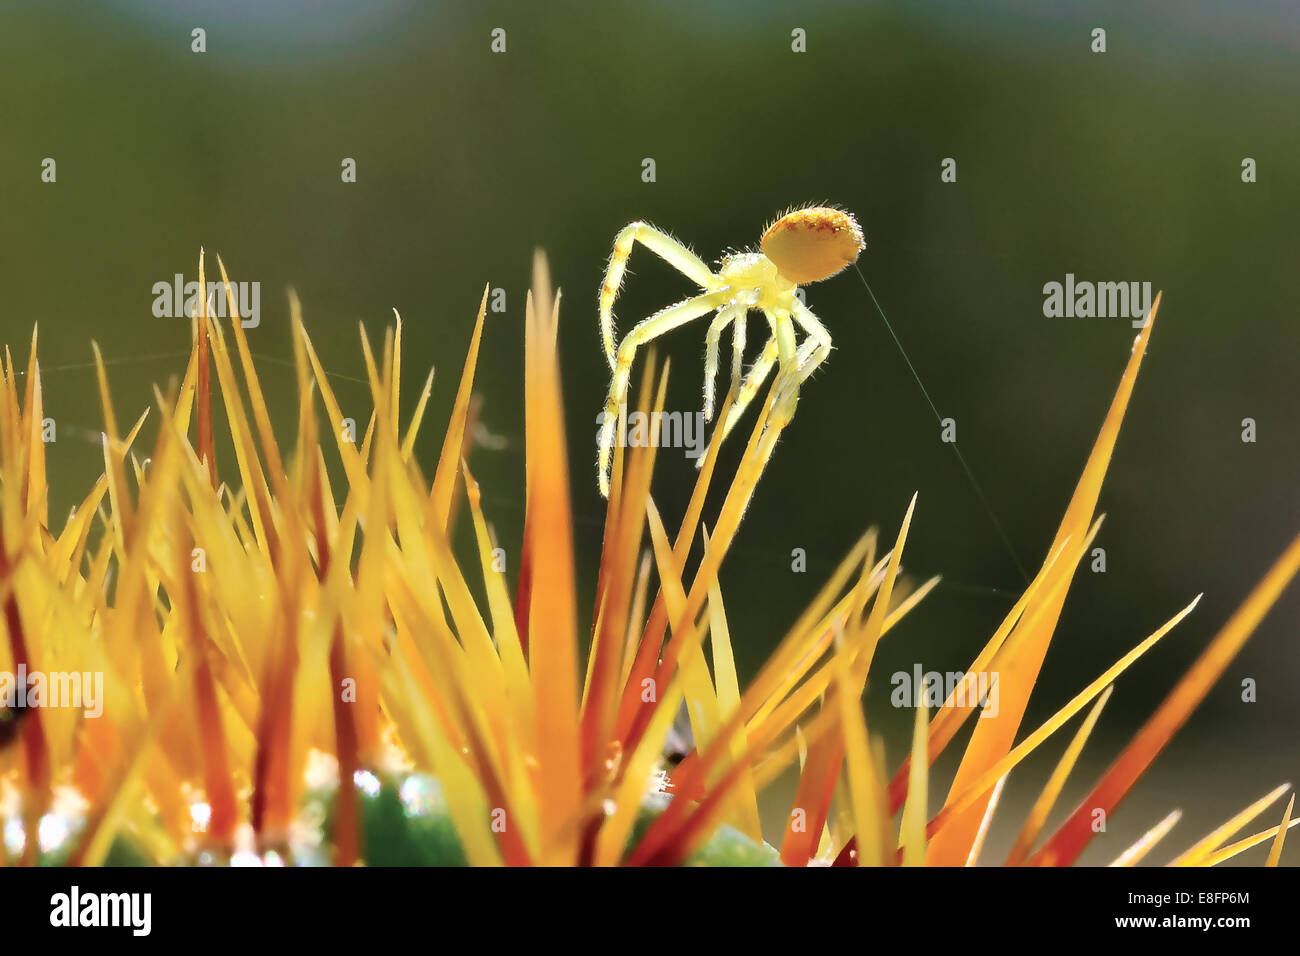 Araignée crabe sur le dessus de cactus Banque D'Images